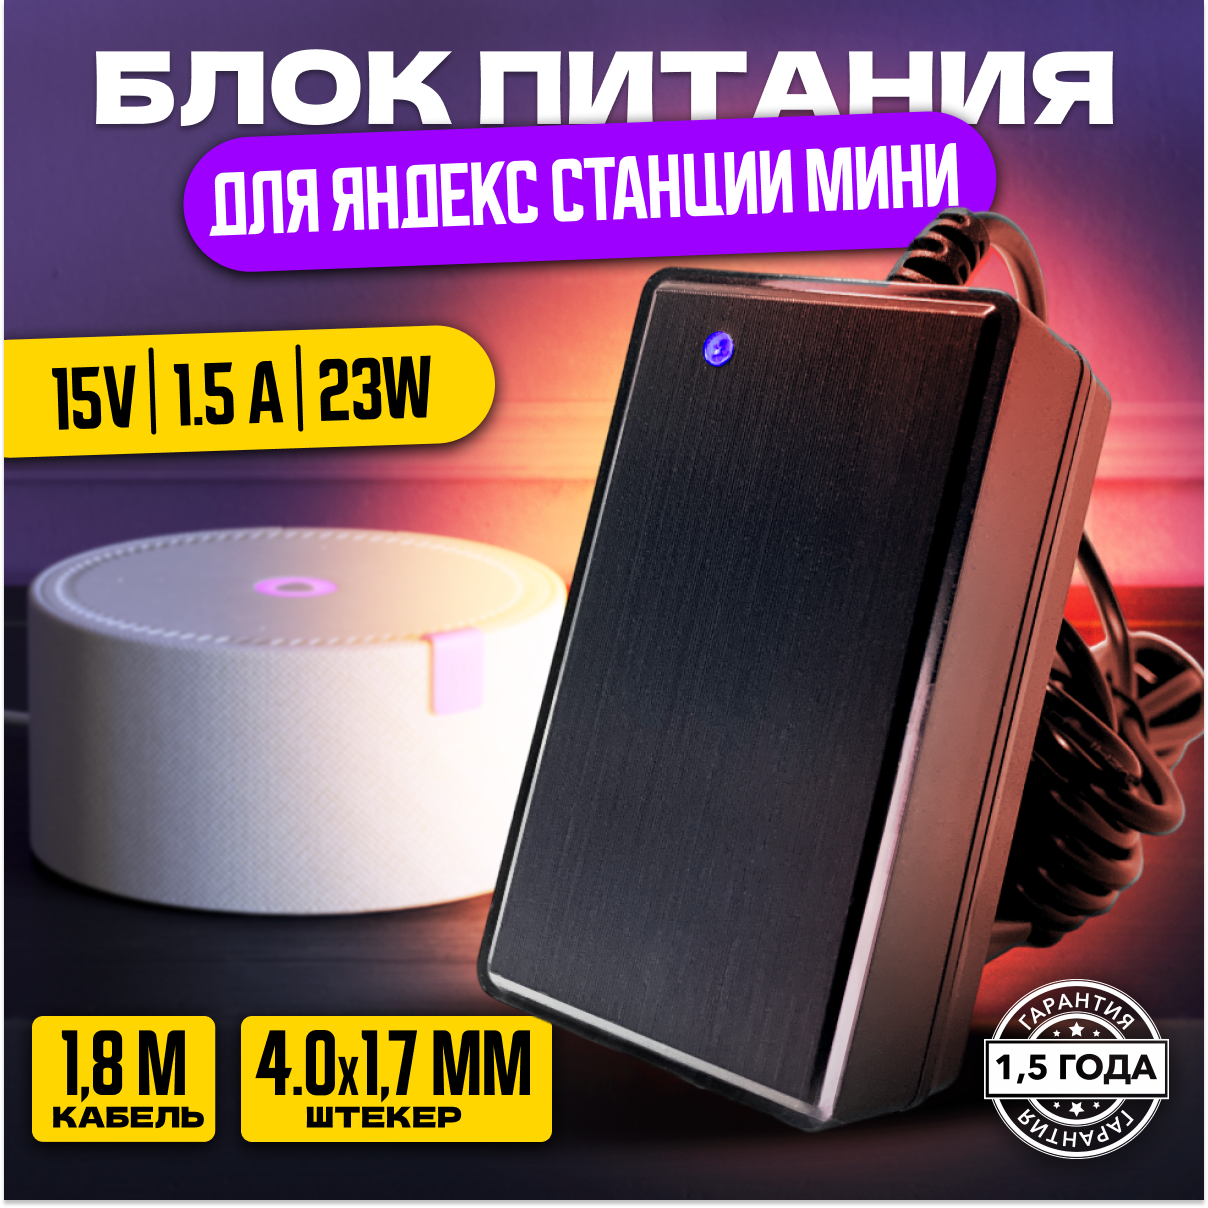 Зарядное устройство 15В 1.5А (4.0x1.7мм) 1.8 метра для умной портативной колонки Яндекс Станция мини